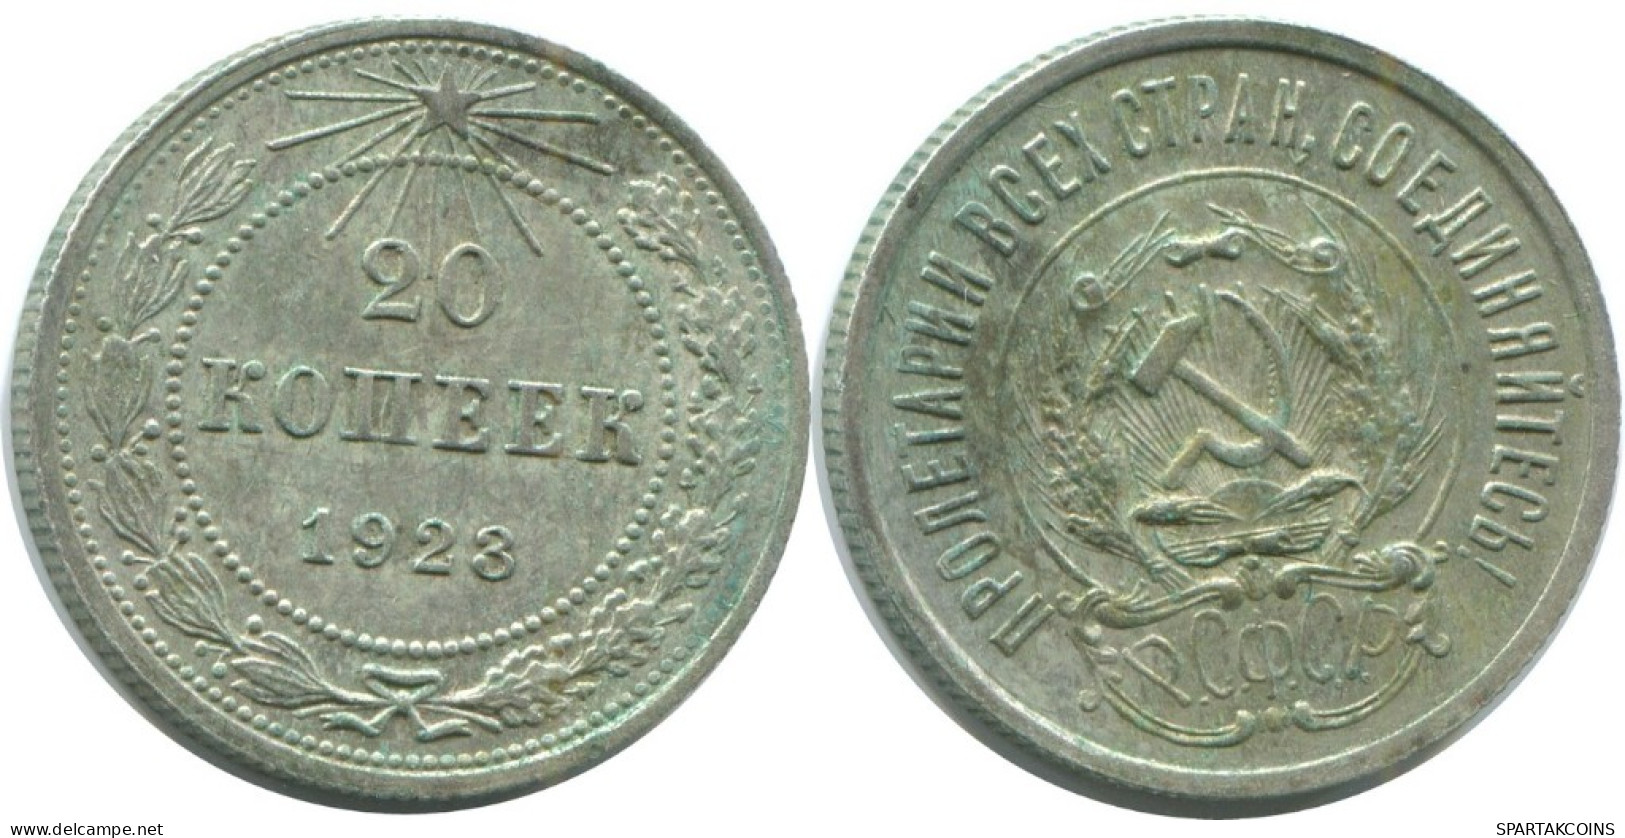 20 KOPEKS 1923 RUSSLAND RUSSIA RSFSR SILBER Münze HIGH GRADE #AF587.4.D.A - Russia